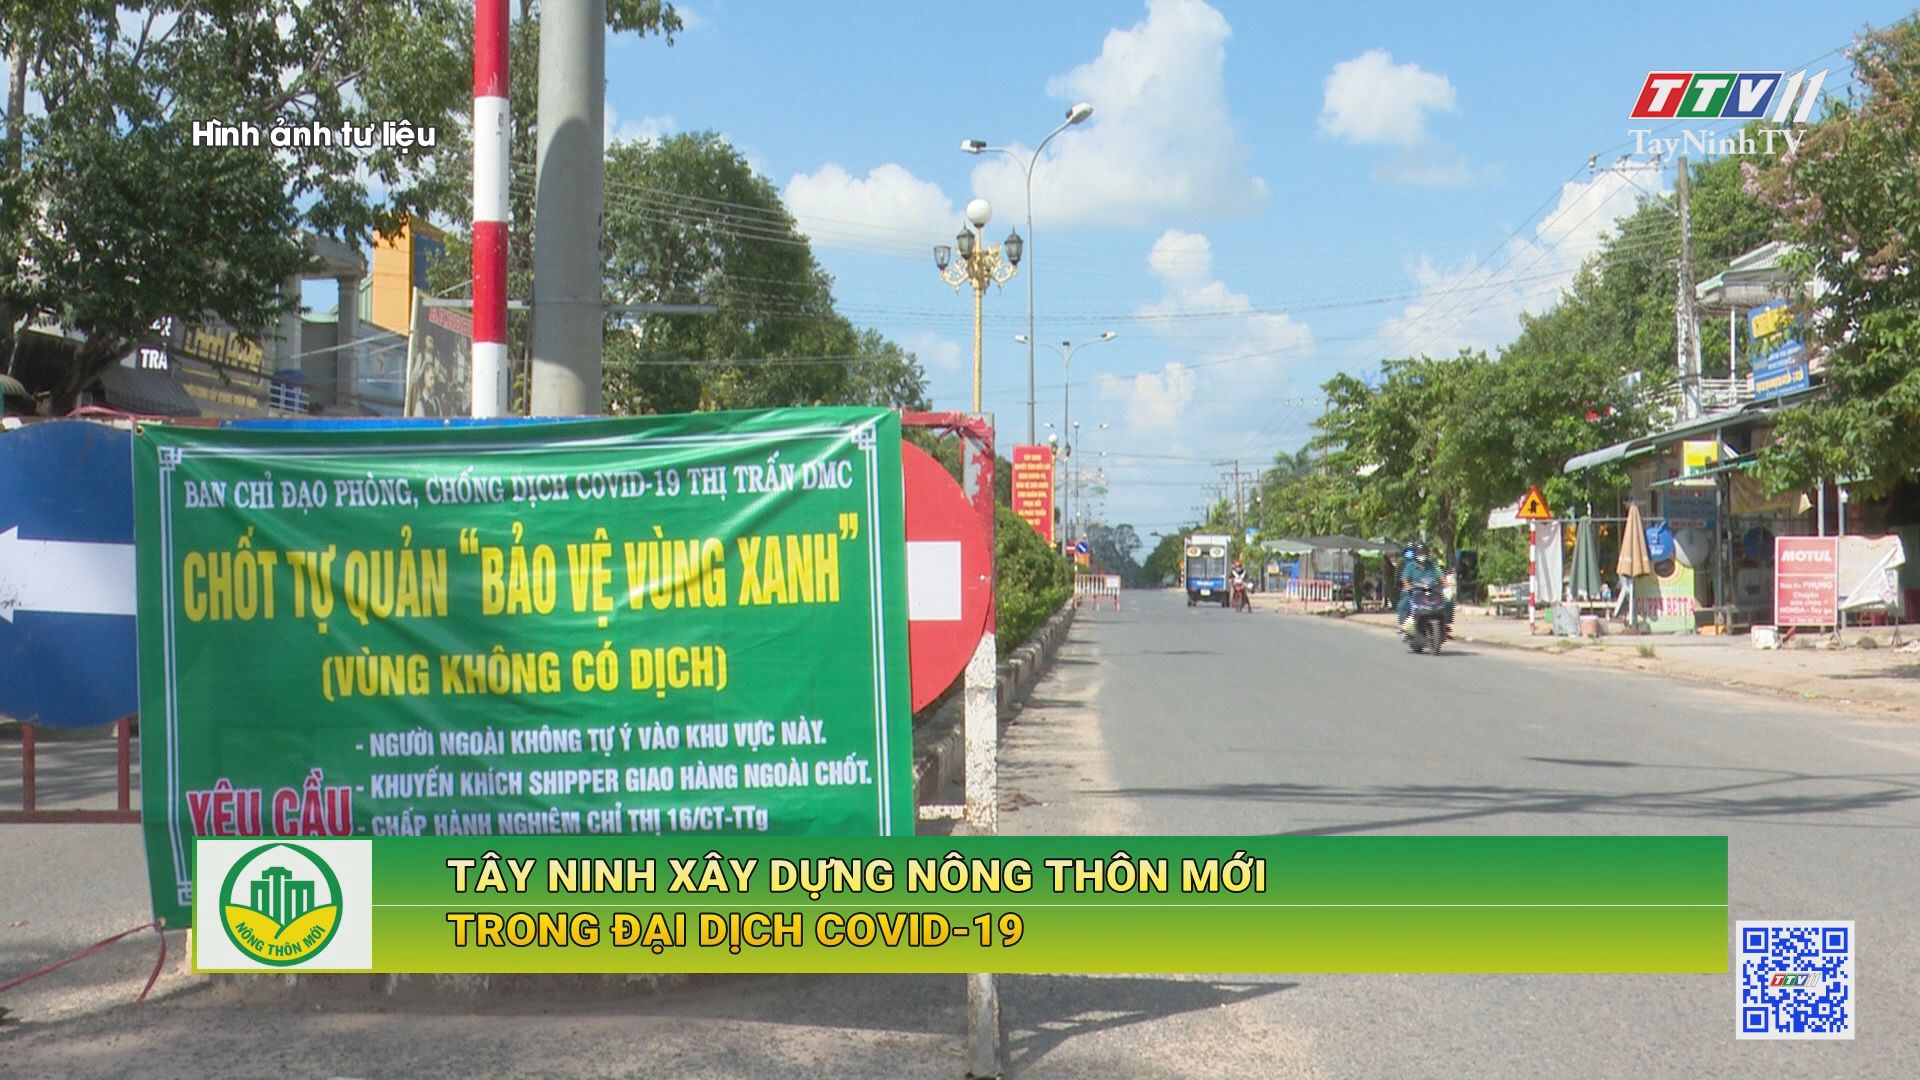 Tây Ninh xây dựng nông thôn mới trong đại dịch Covid-19 | TÂY NINH XÂY DỰNG NÔNG THÔN MỚI | TayNinhTV